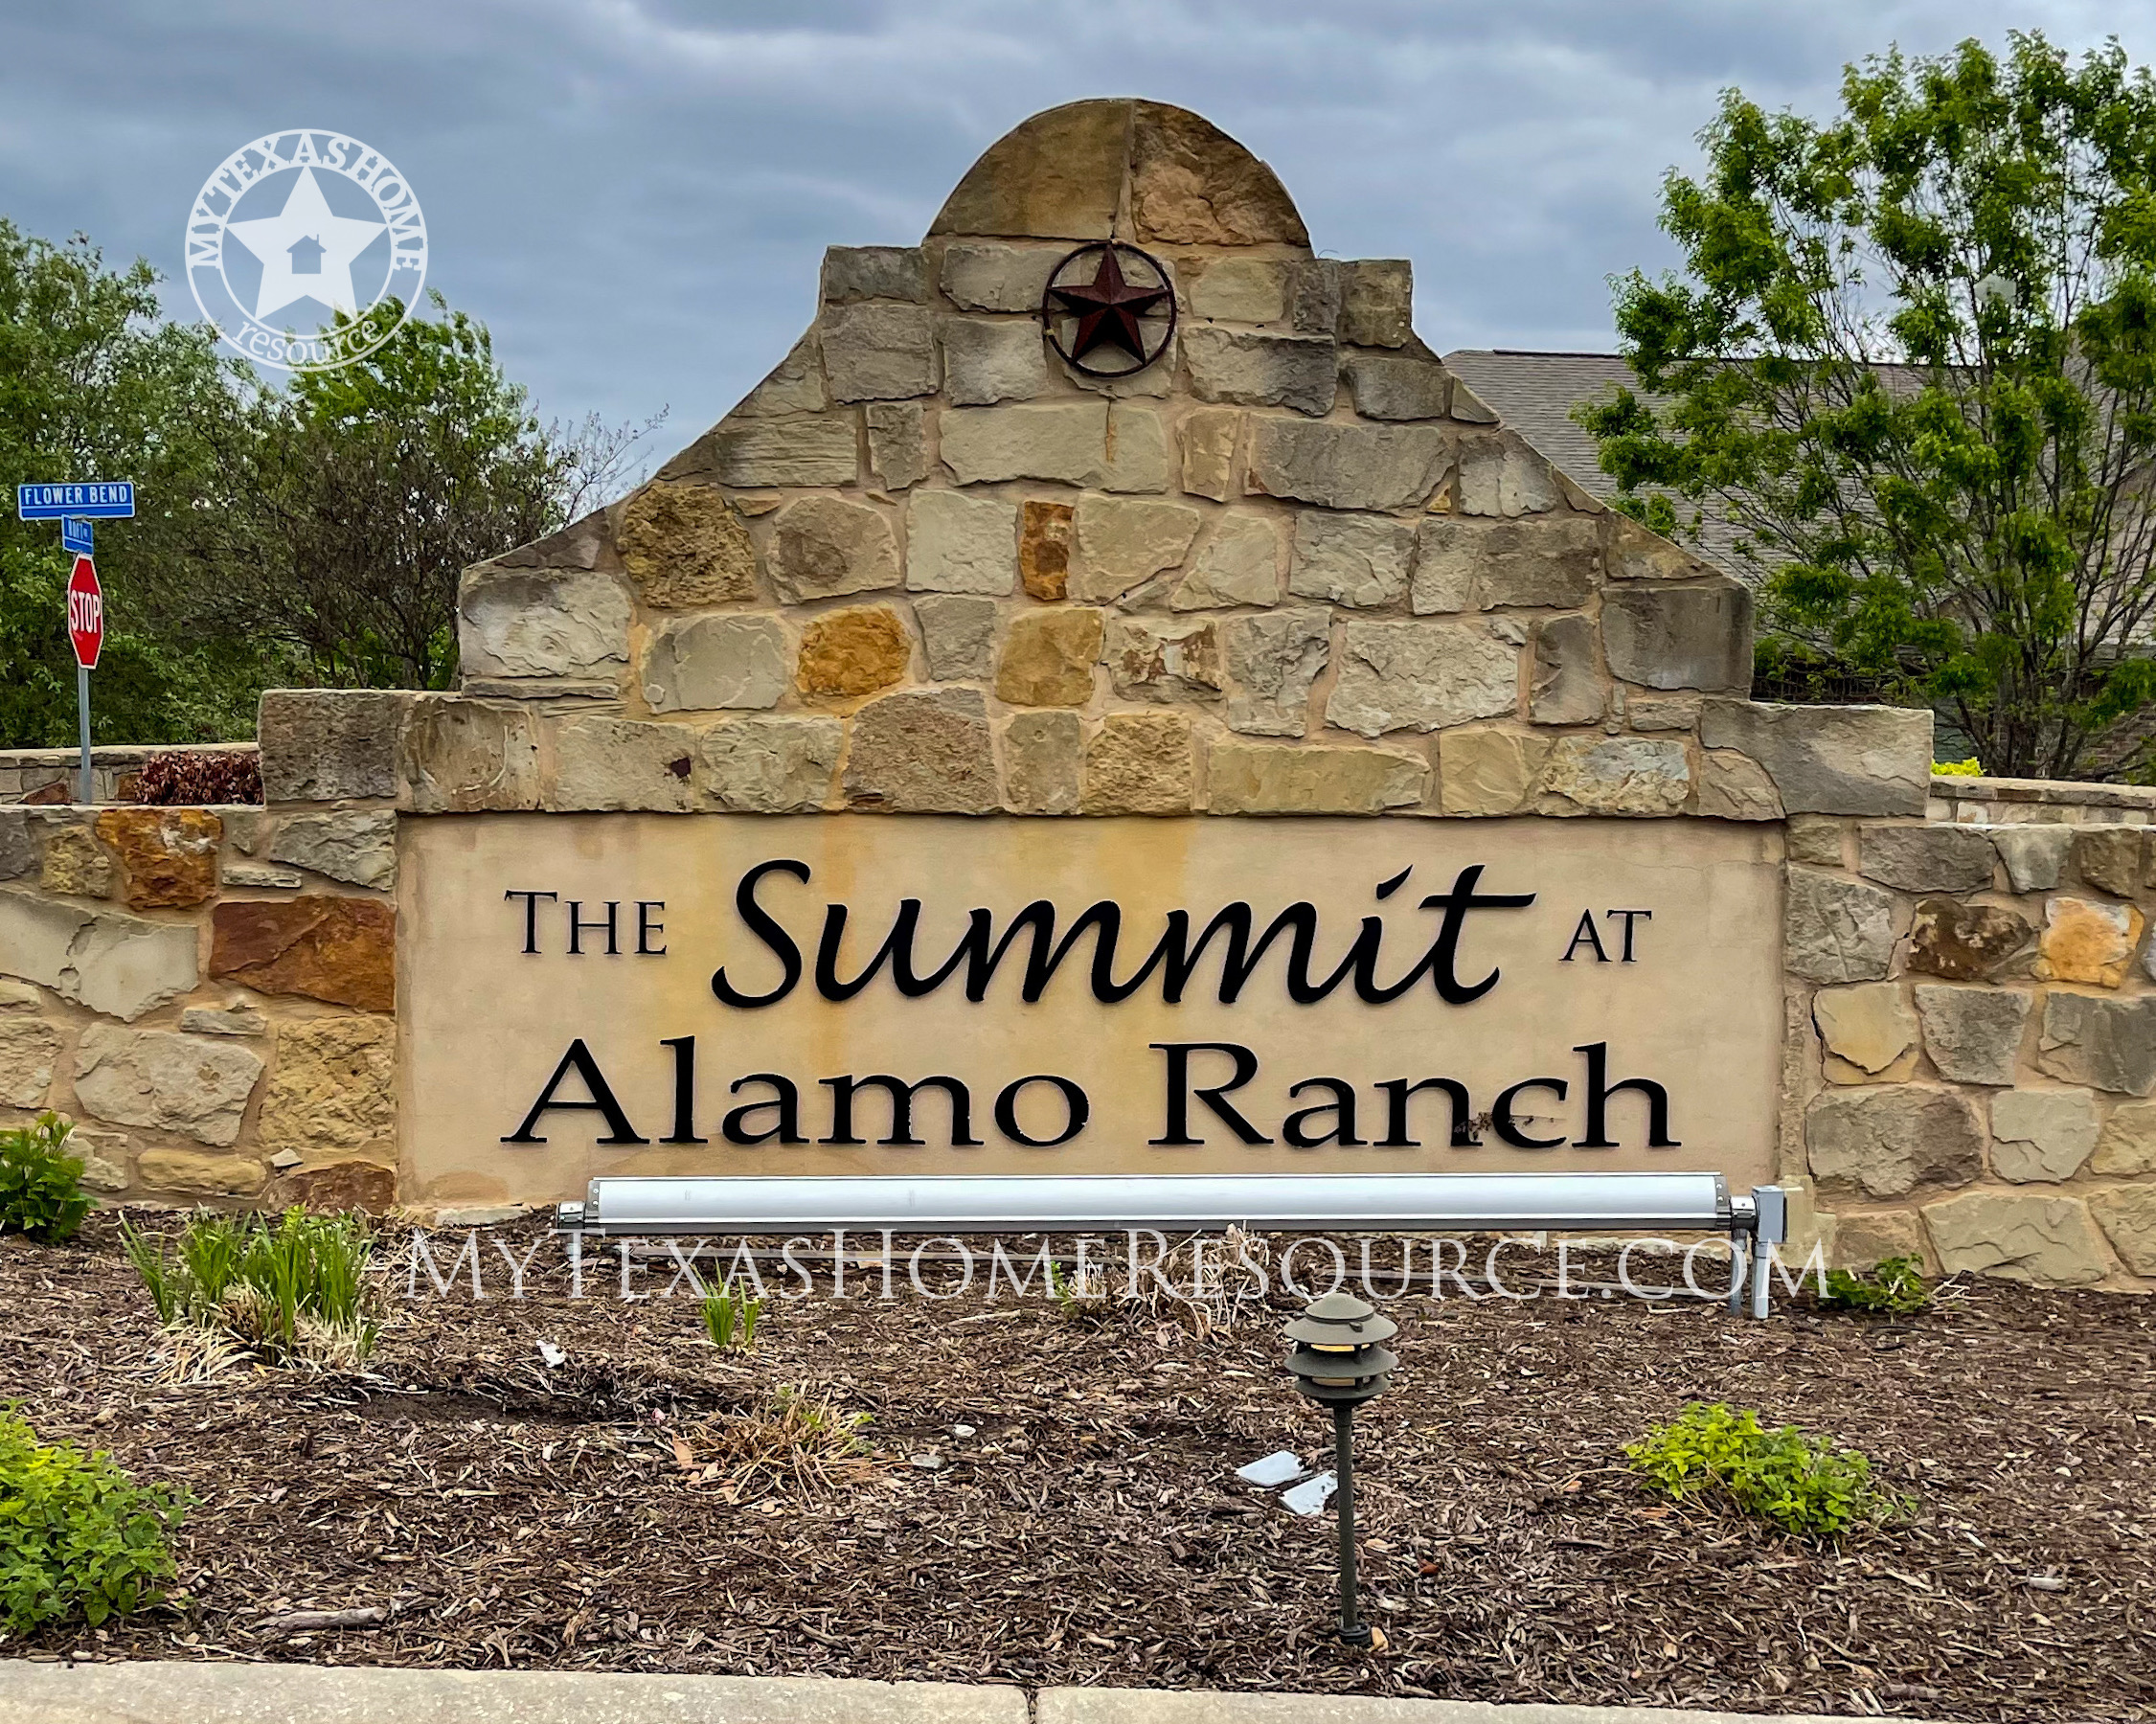 德克萨斯州网上正规的彩票网站阿拉莫牧场社区峰会